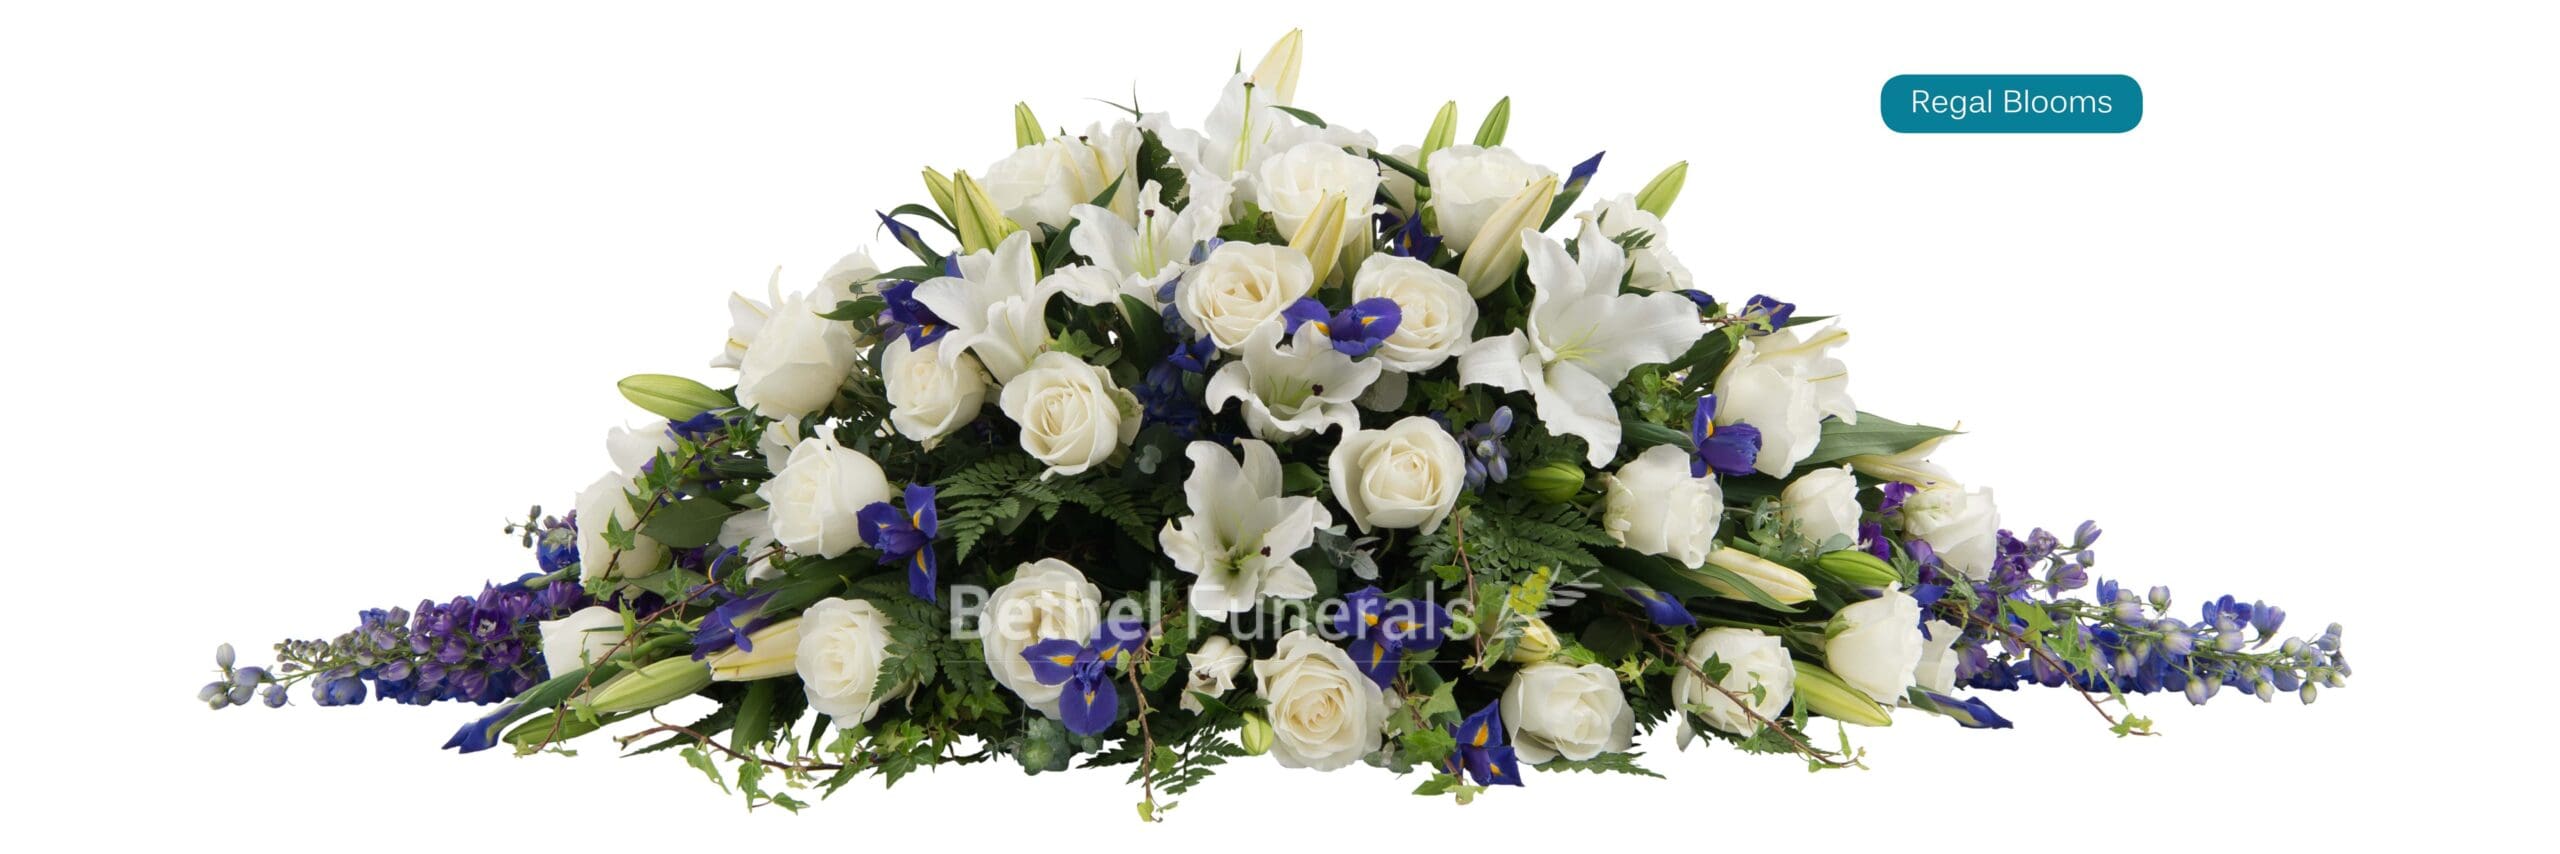 Regal Blooms funeral flowers